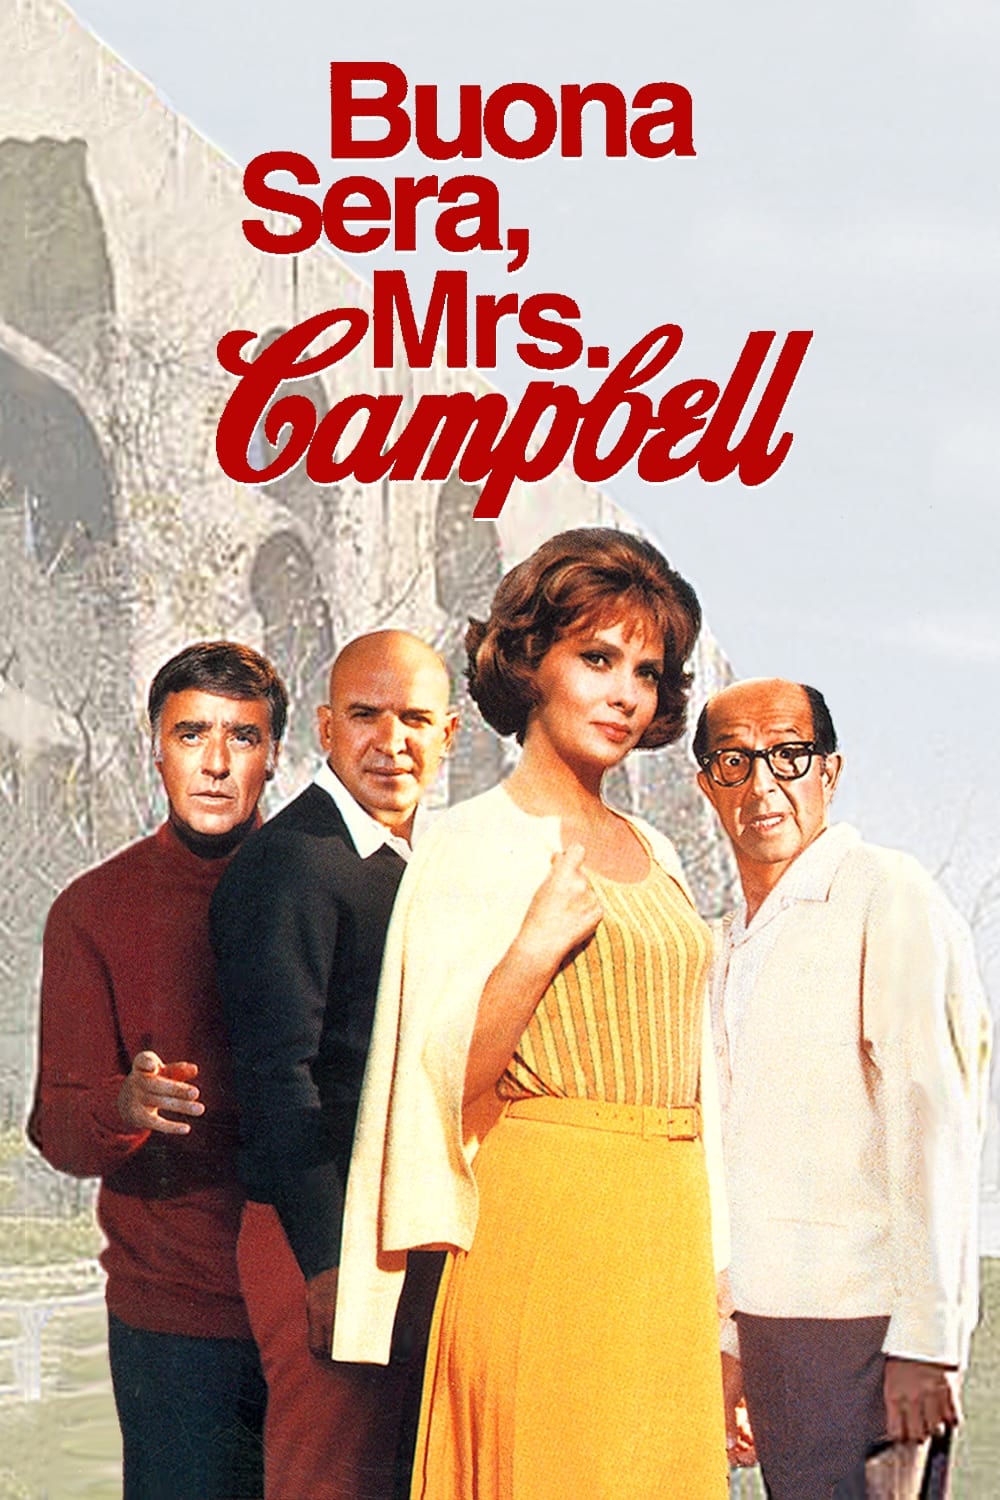 دانلود صوت دوبله فیلم Buona Sera, Mrs. Campbell